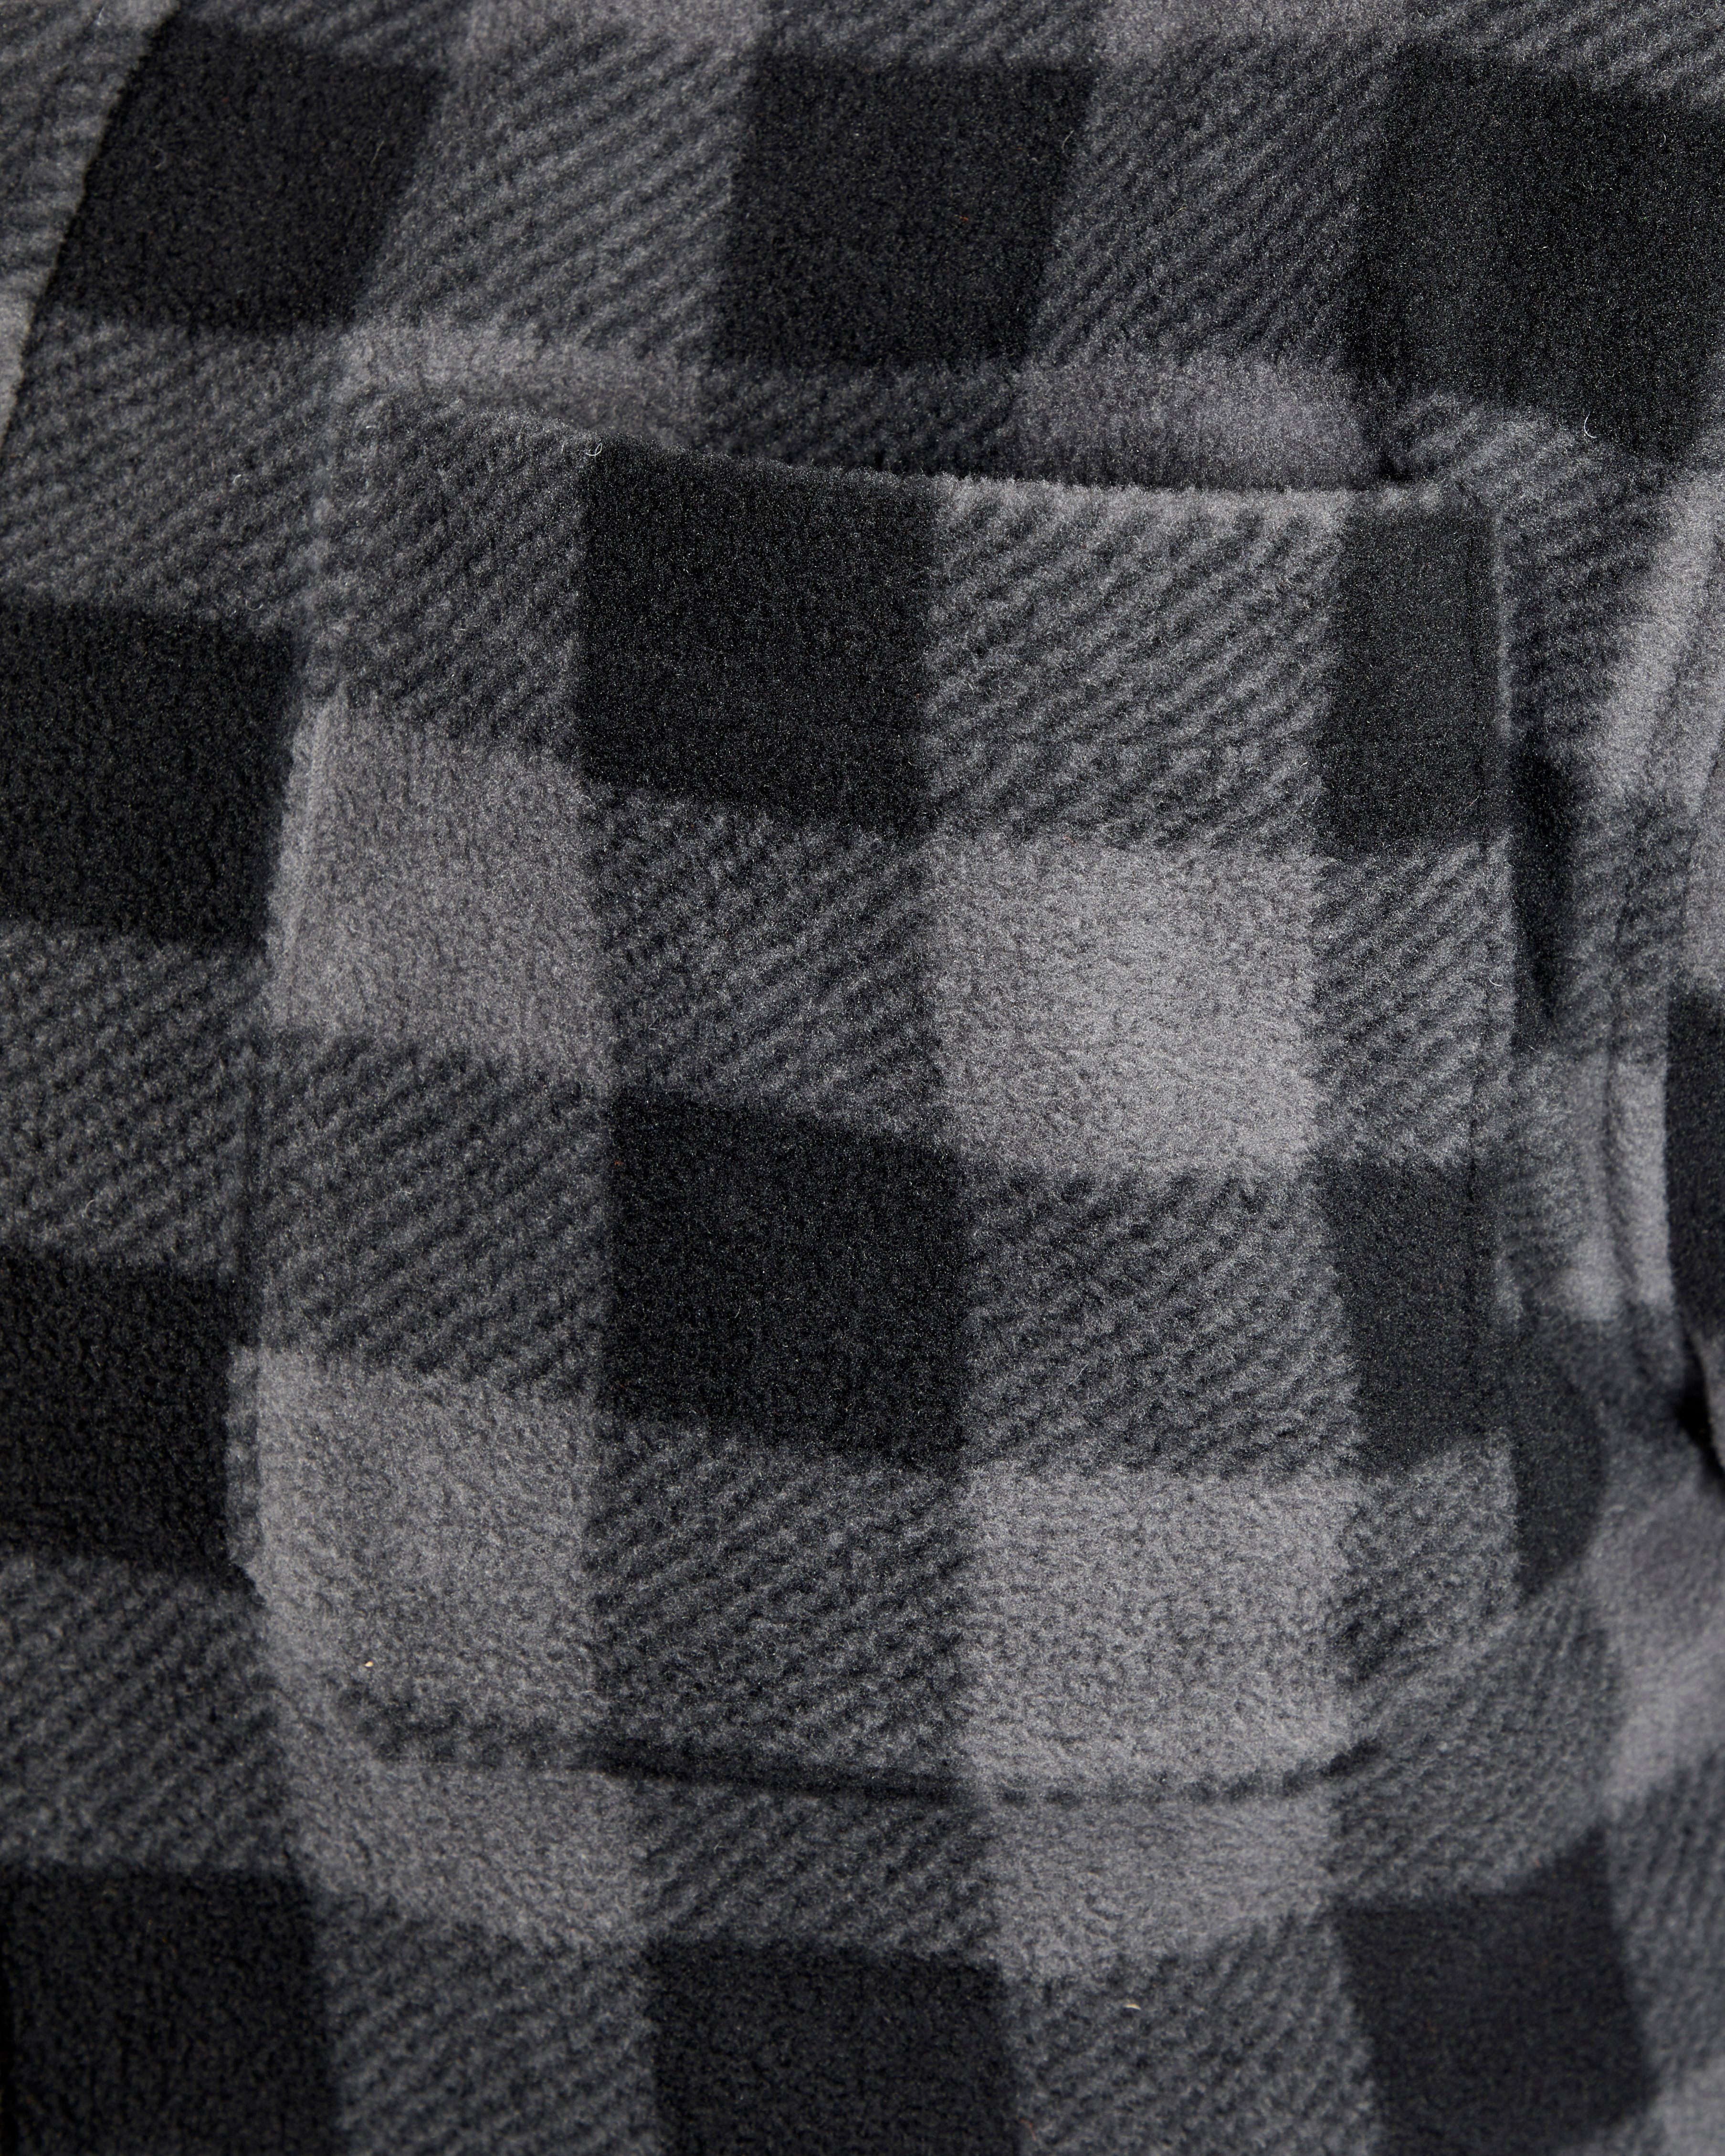 Northern Country Hemd zu 5 zugeknöpft offen oder verlängertem Jacke Rücken, Flanellhemd Flanellstoff (als mit warm grau-schwarz tragen) gefüttert, mit Taschen